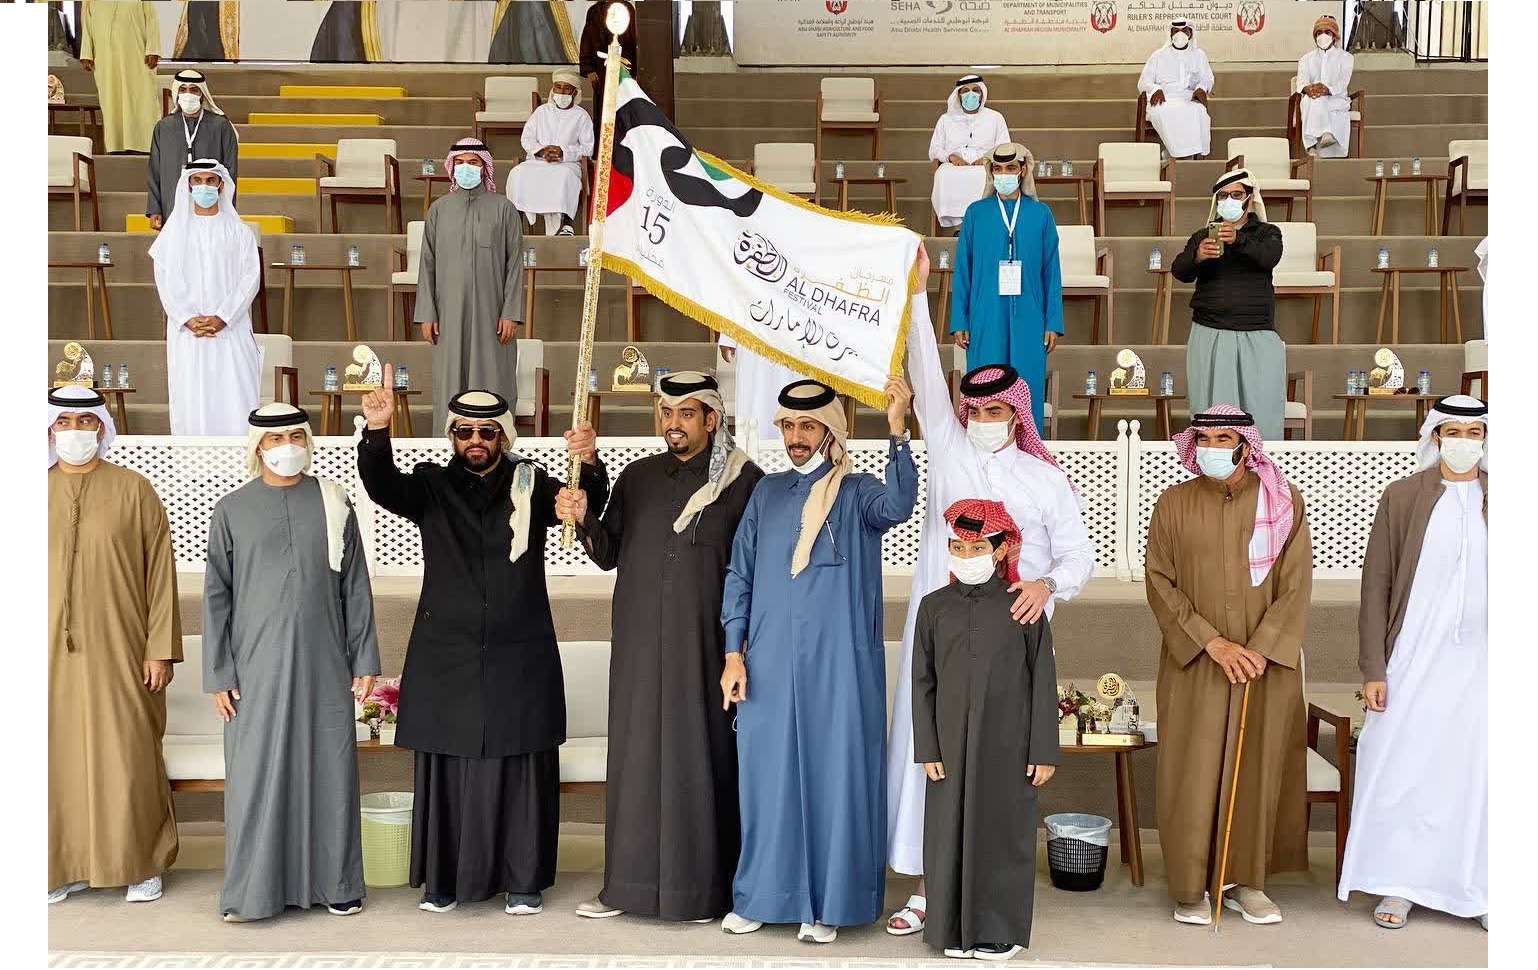 بن طوار: أهدي بيرق الإمارات للشعب القطري كافة